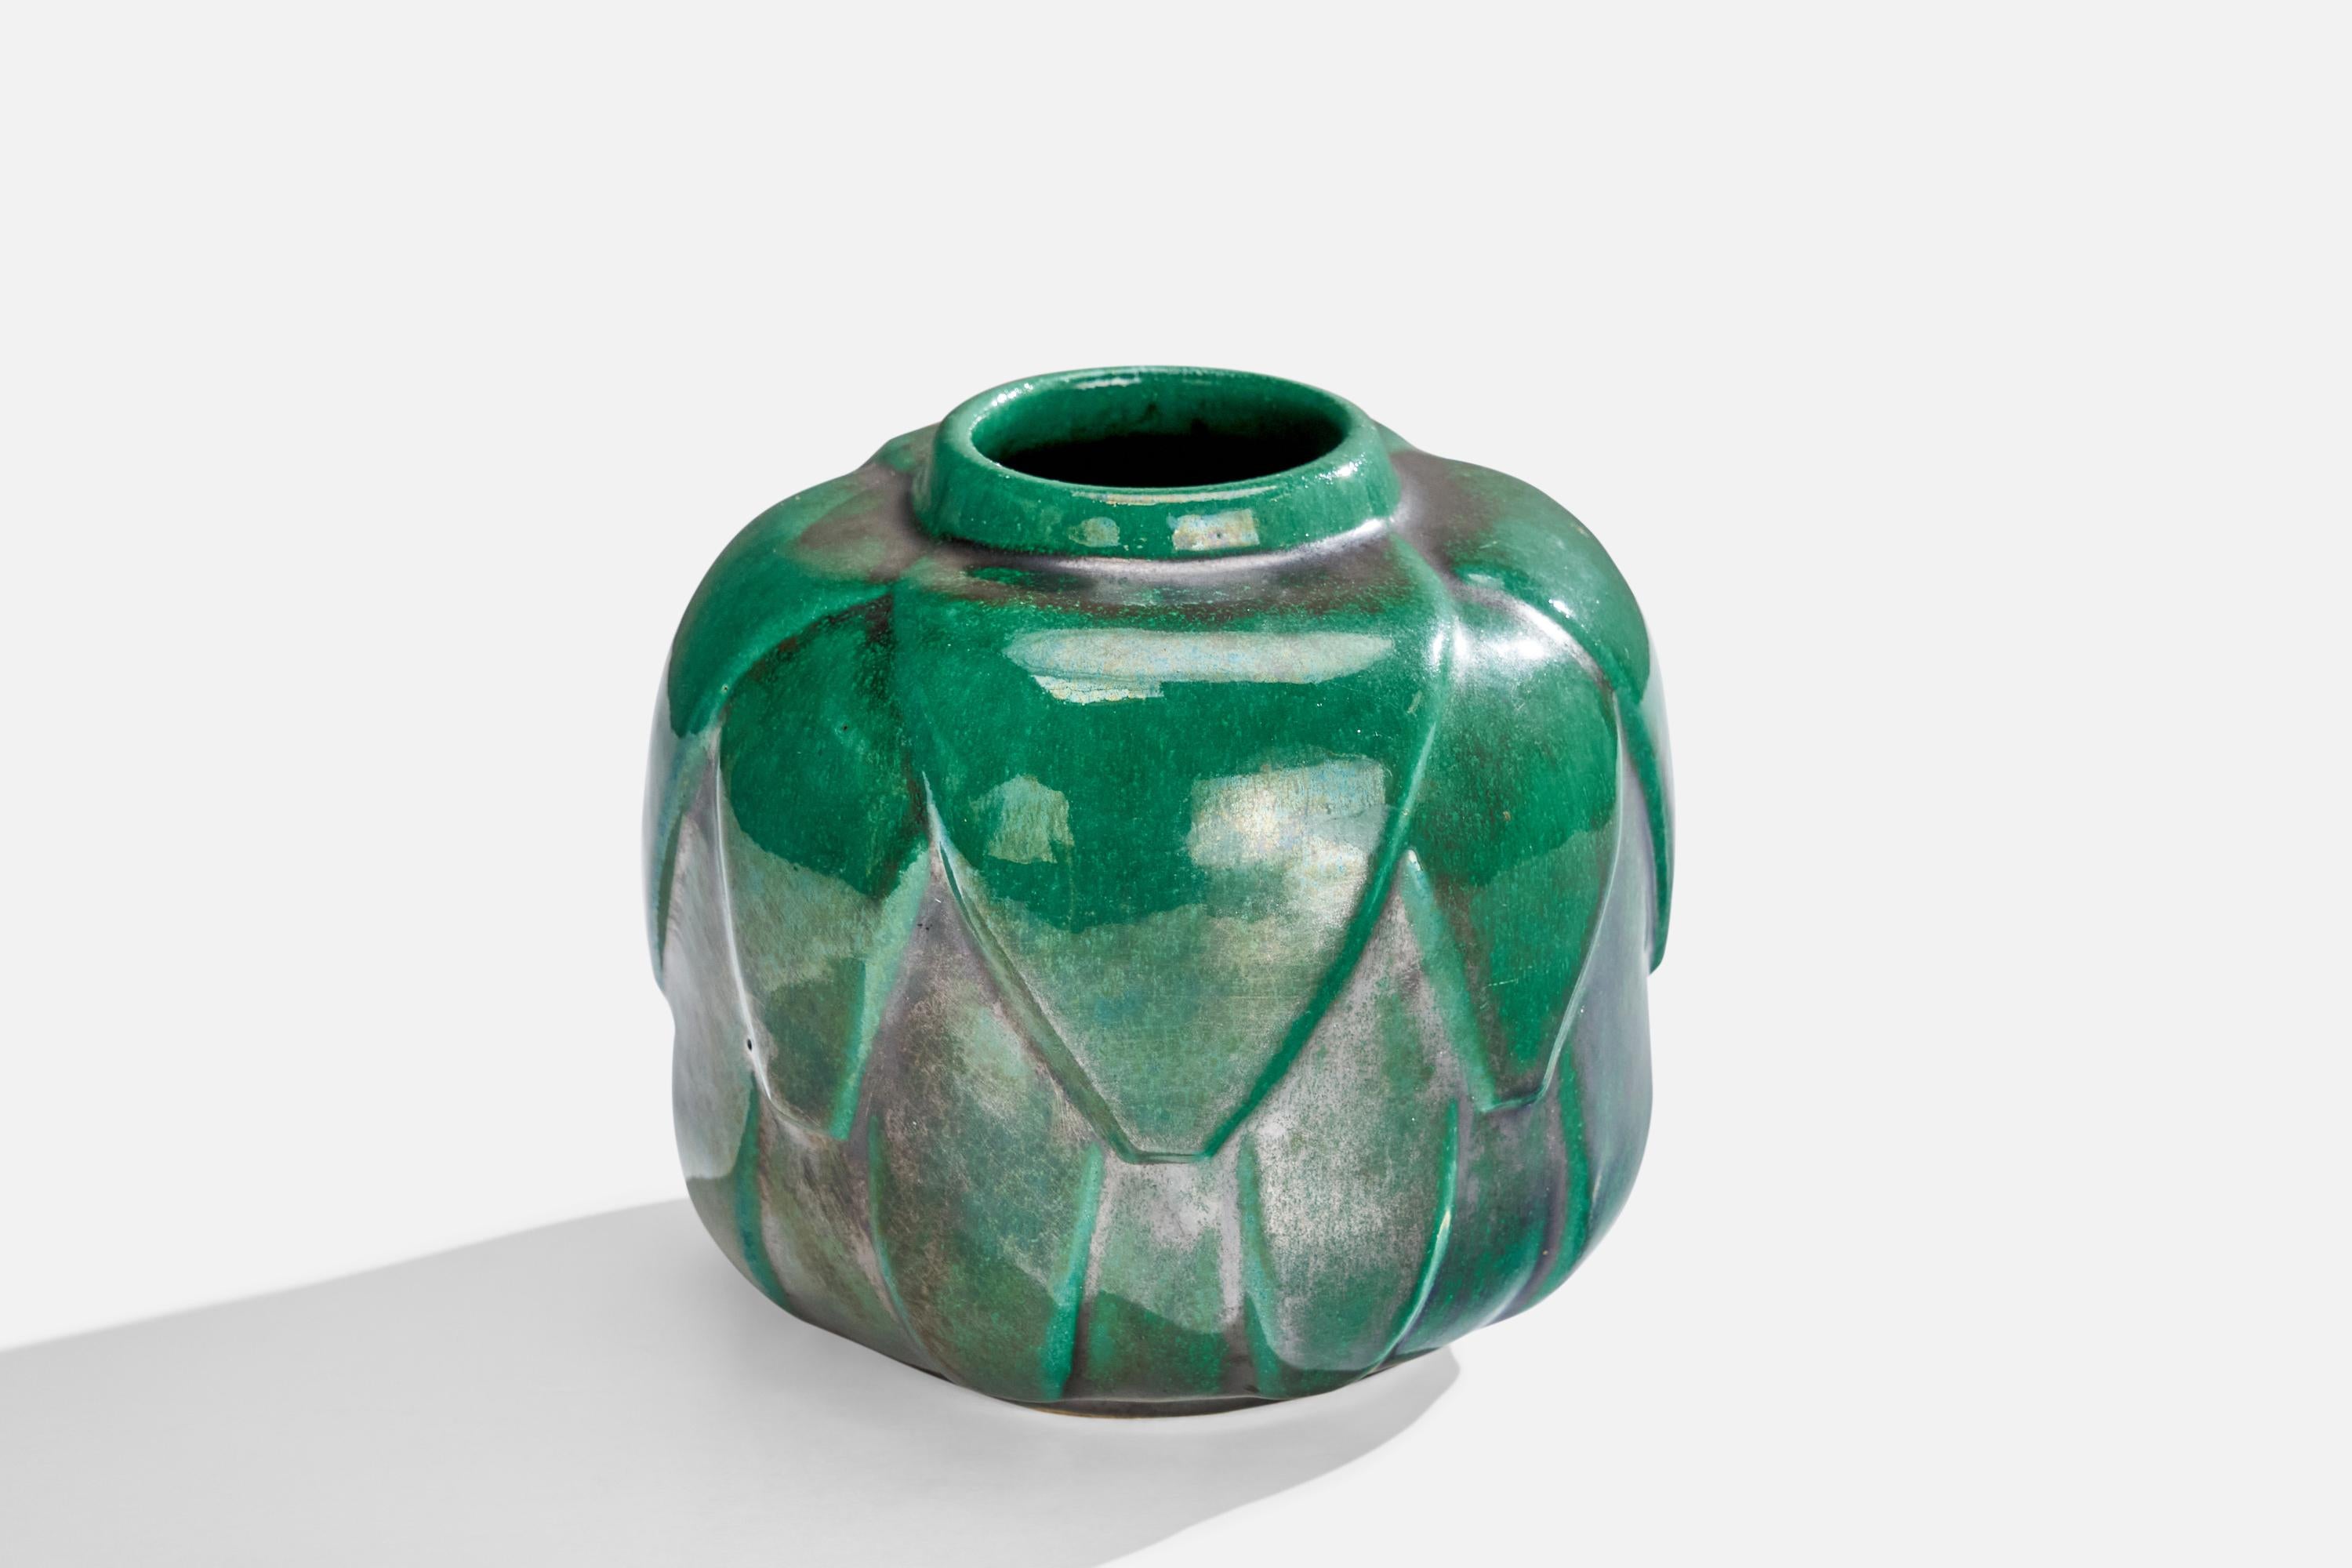 A green-glazed vase designed and produced by Motala Lervarufabrik, Sweden, 1930s.